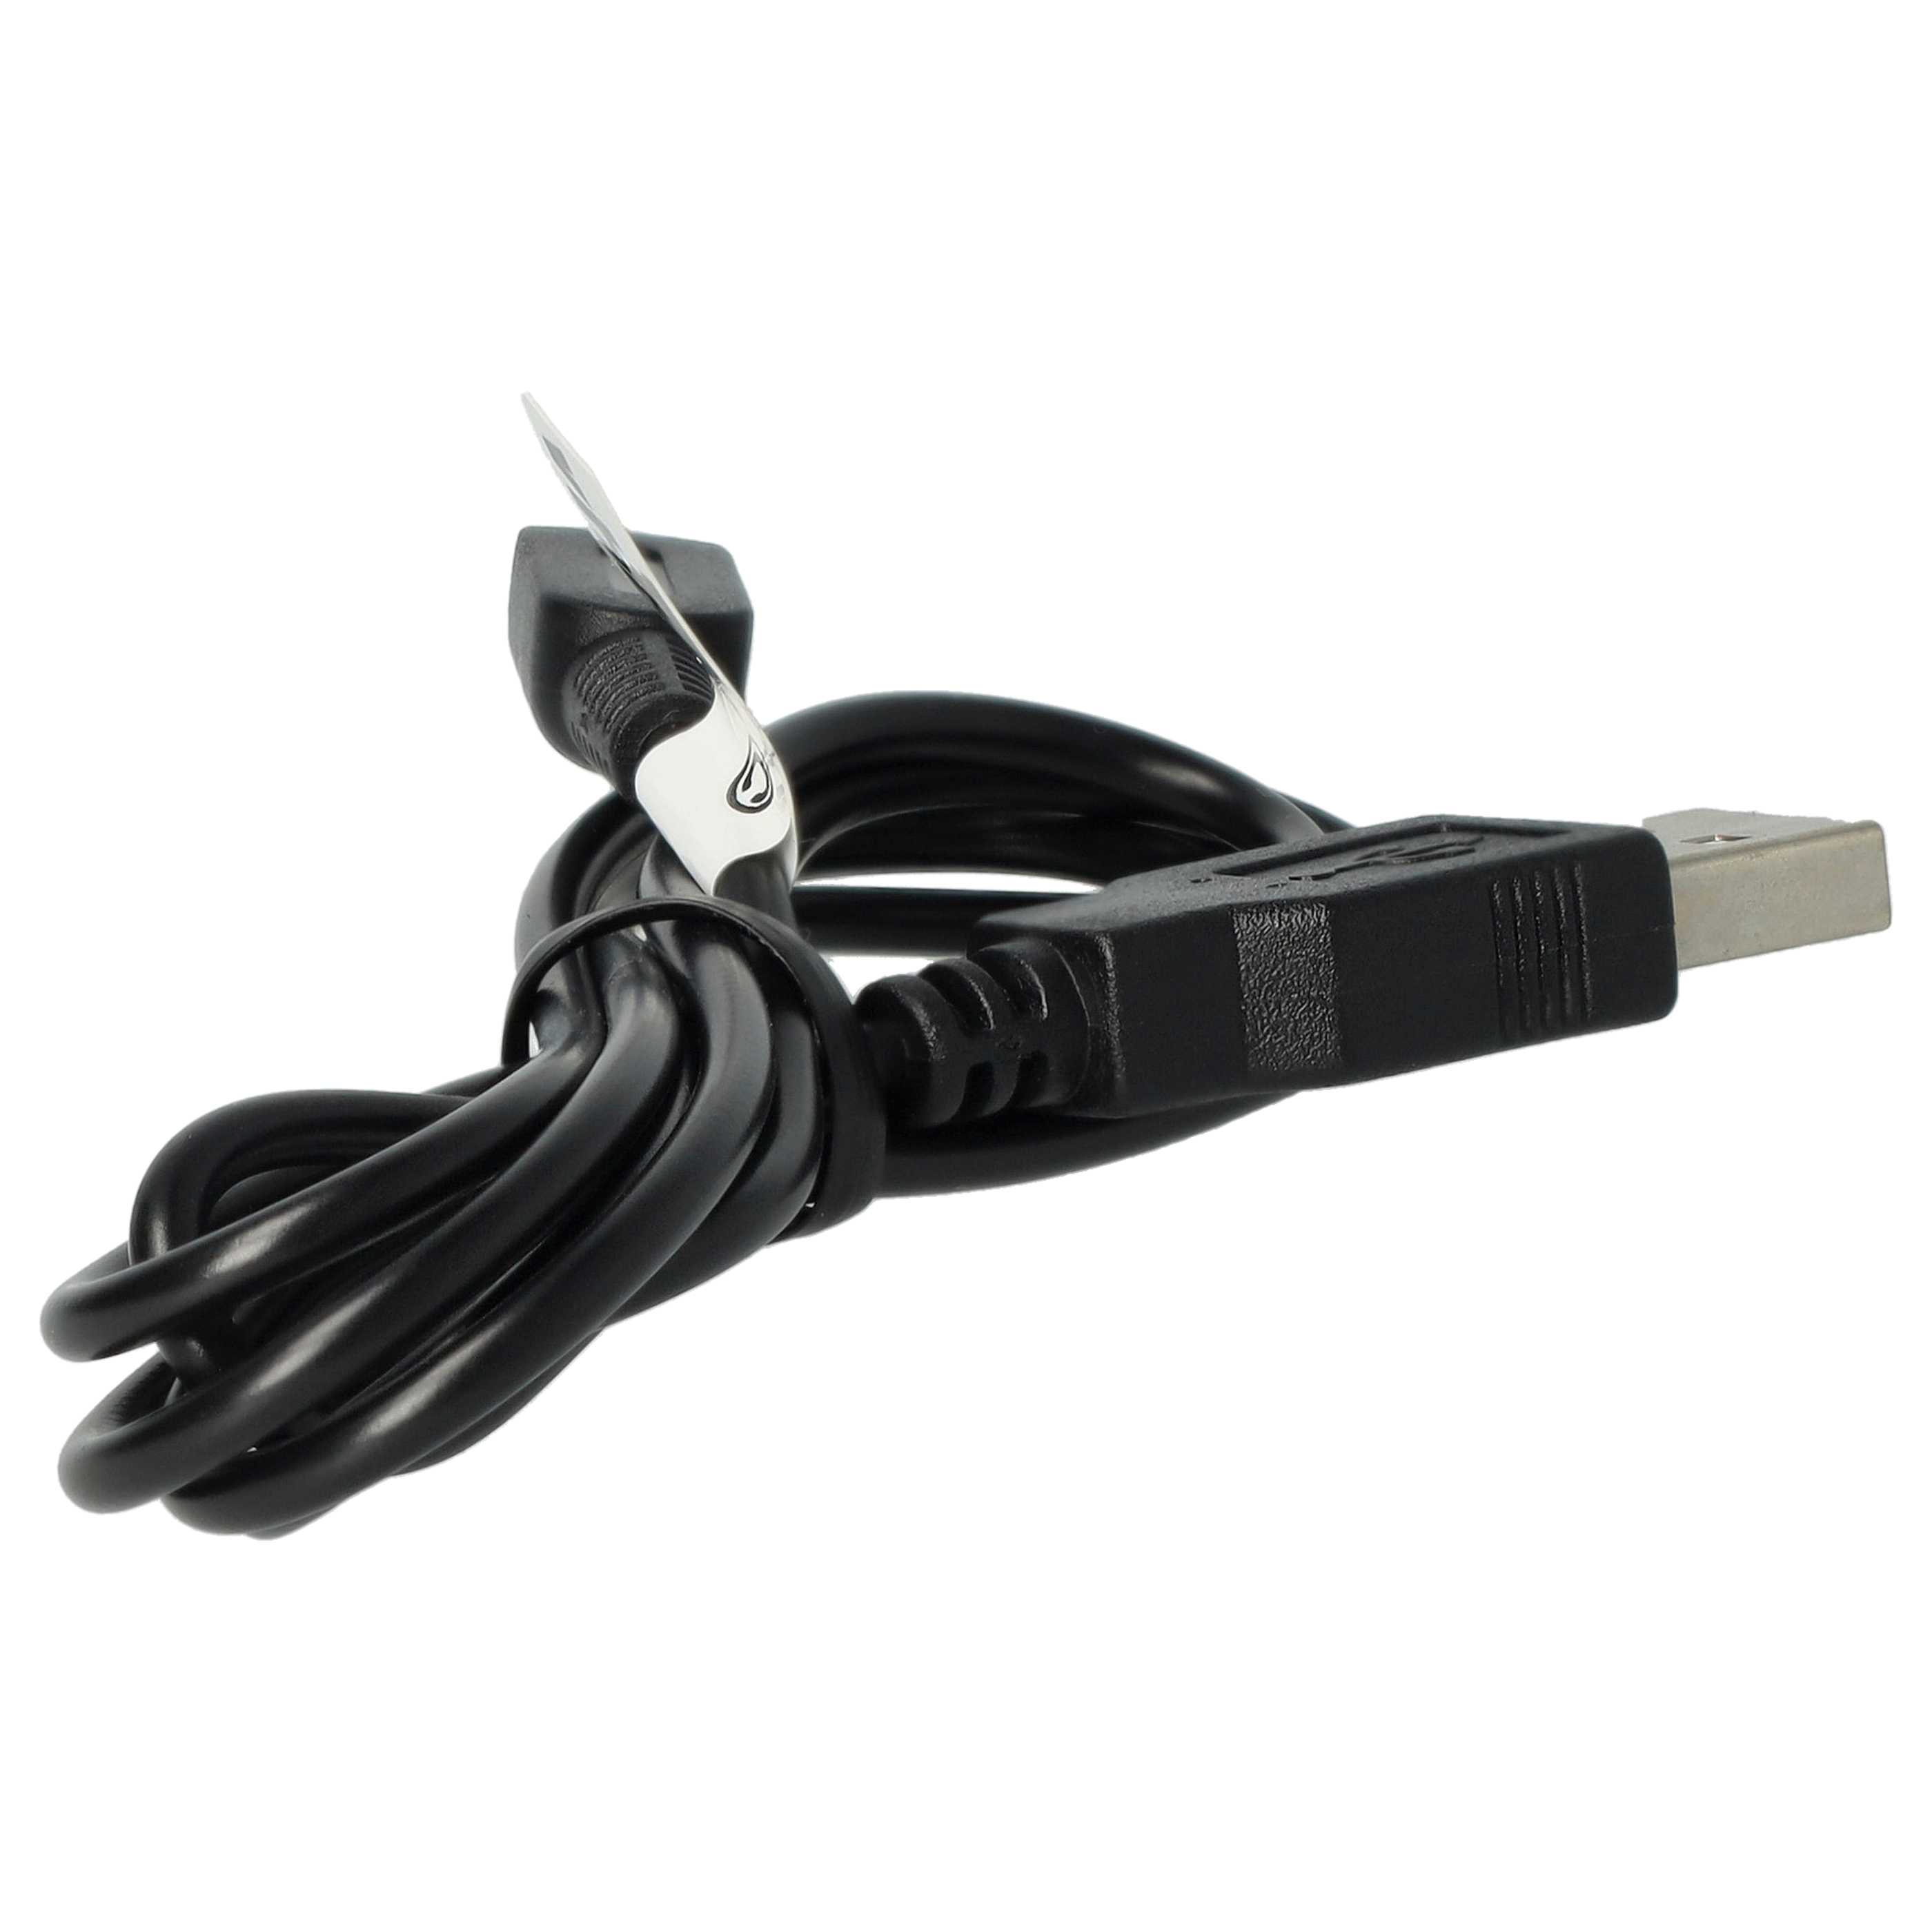 Kabel USB do konsoli Nintendo 3DS - kabel przyłączeniowy, 1,2 m